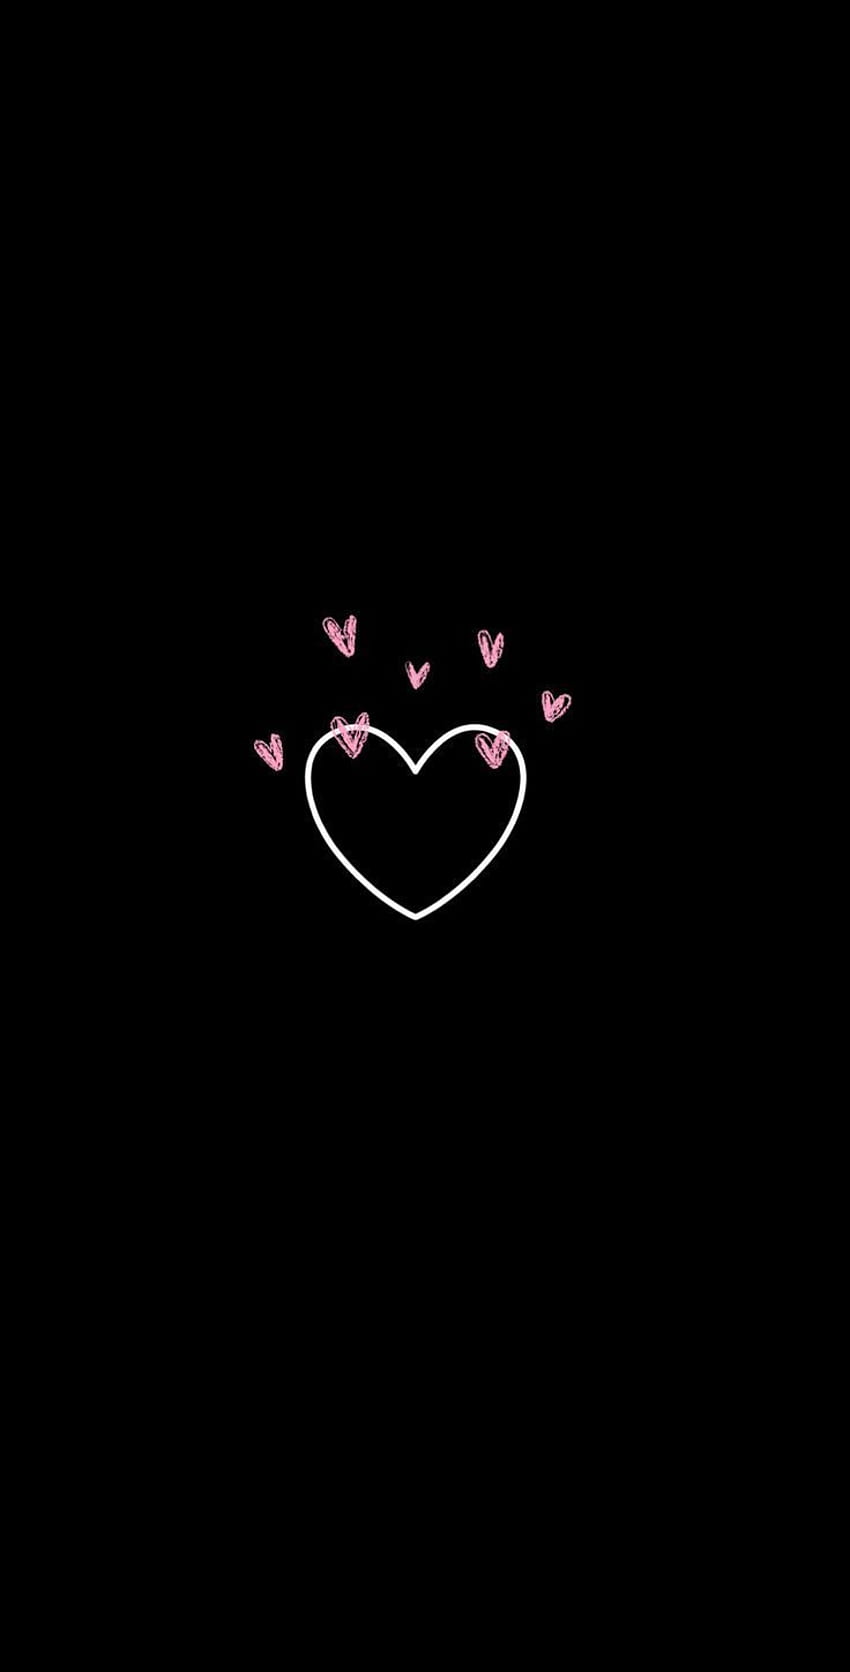 Love Black Heart - Black Heart Stock Shutterstock - Tons of ...